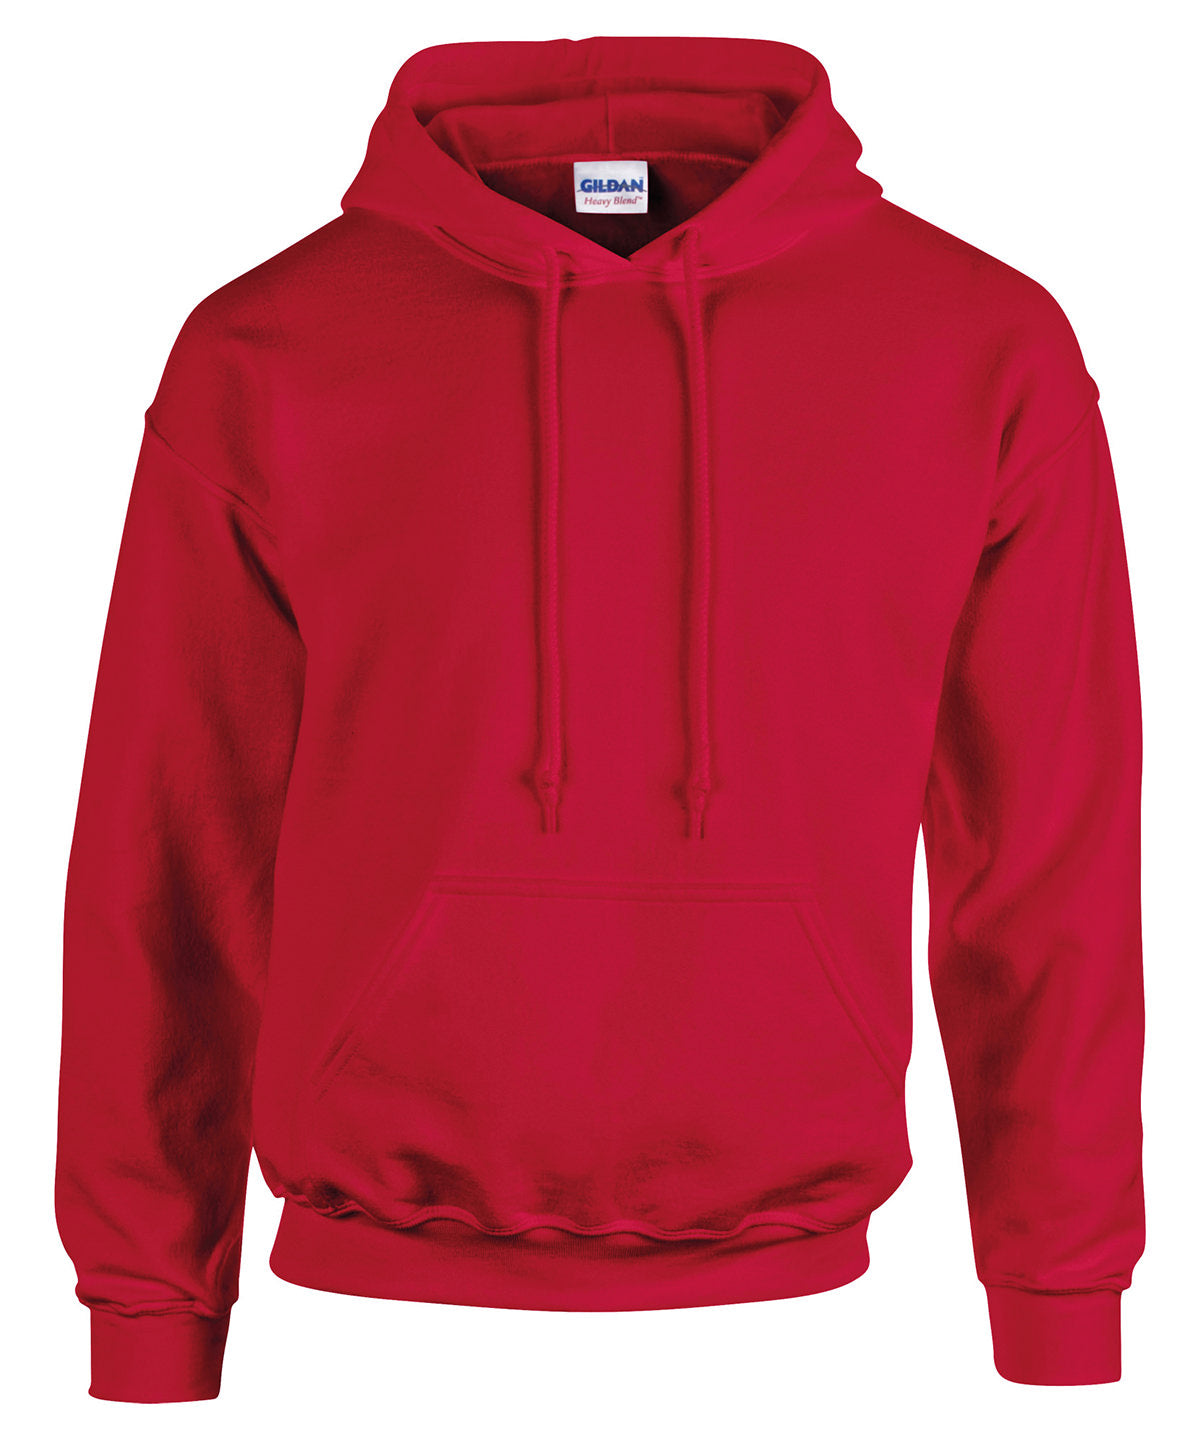 Personalised Hoodies - Sapphire Gildan Heavy Blend™ hooded sweatshirt